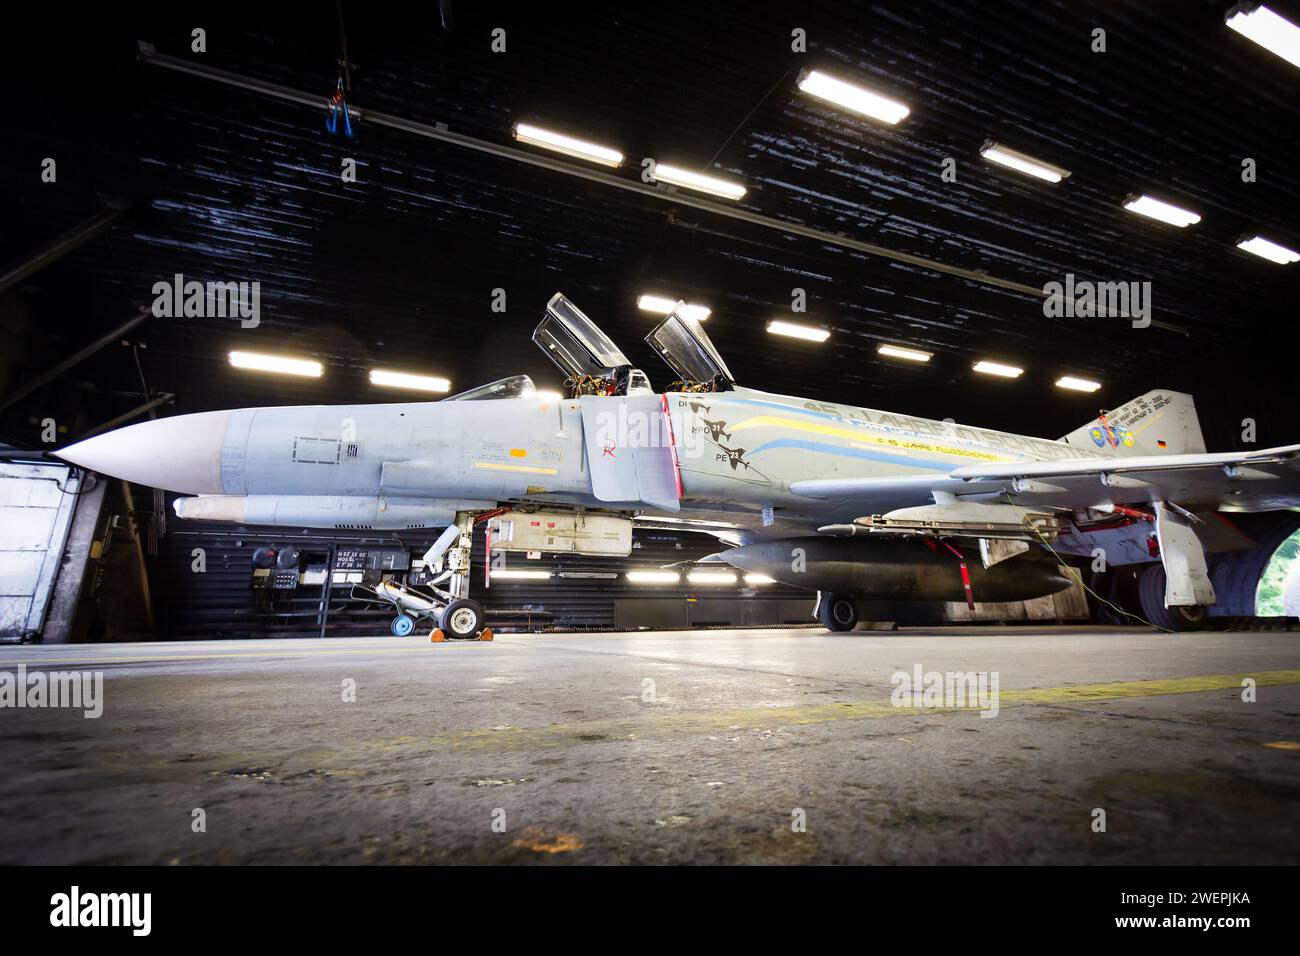 Caccia F-4 Phantom II dell'Aeronautica militare tedesca in un rifugio temprato presso la base aerea di Wittmund, Germania - 29 giugno 2013. Foto Stock